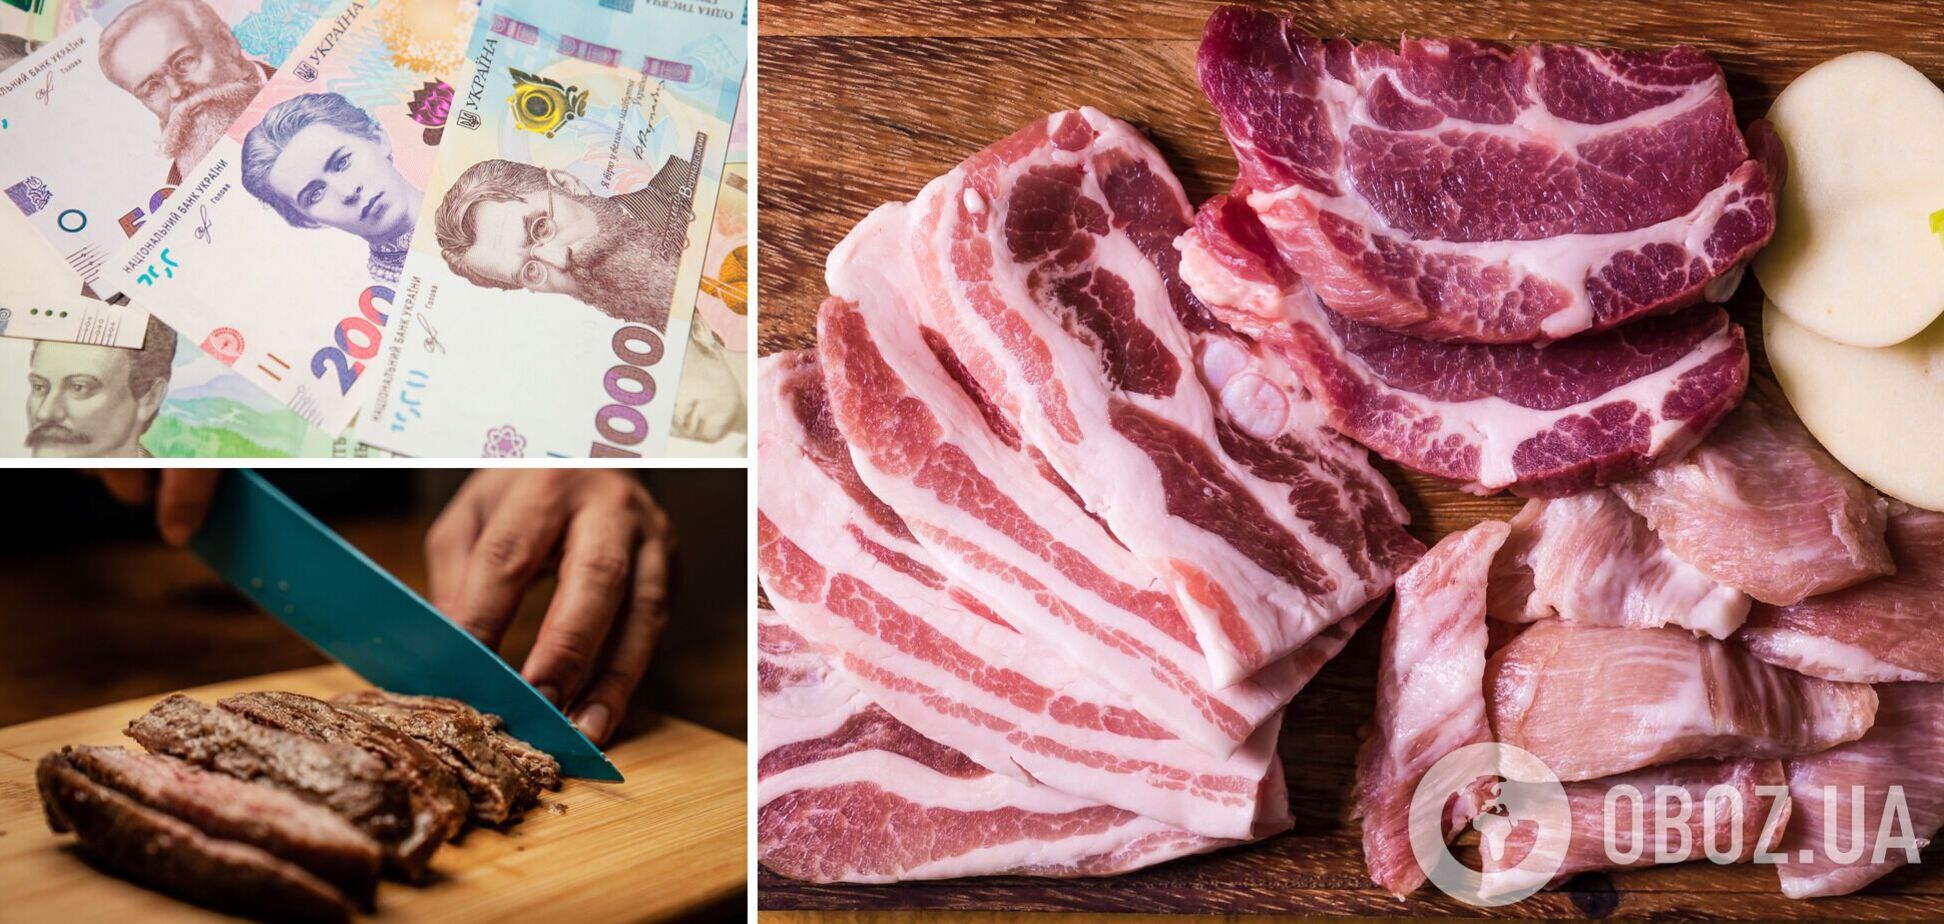 Цены на мясо в Украине вырастут в 2022 году